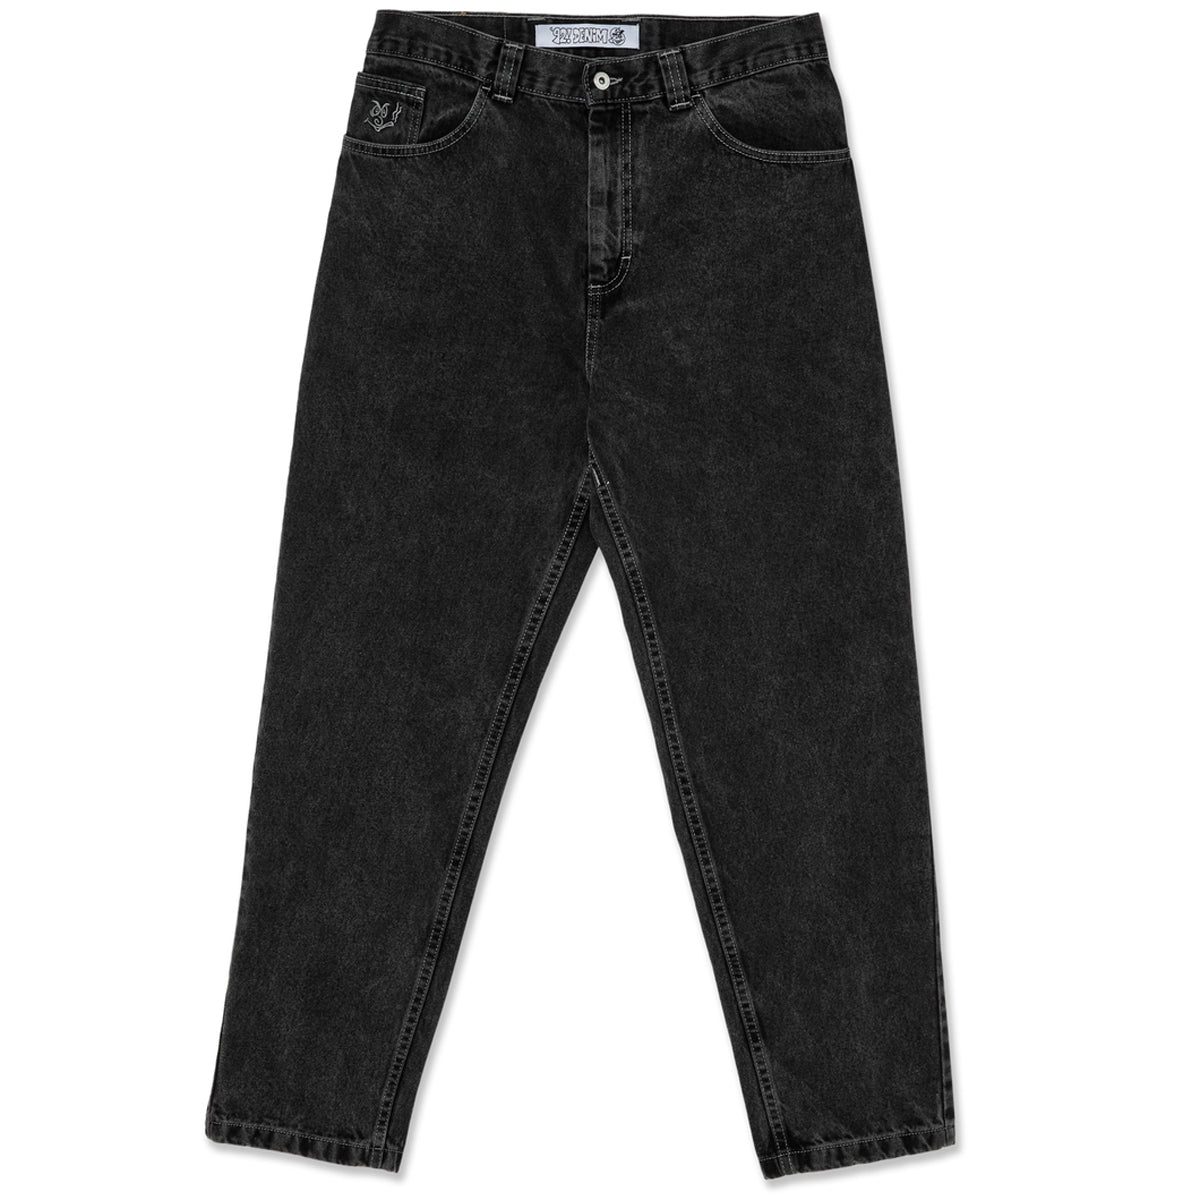 Polar 92! Denim Jeans - Silver Black image 1